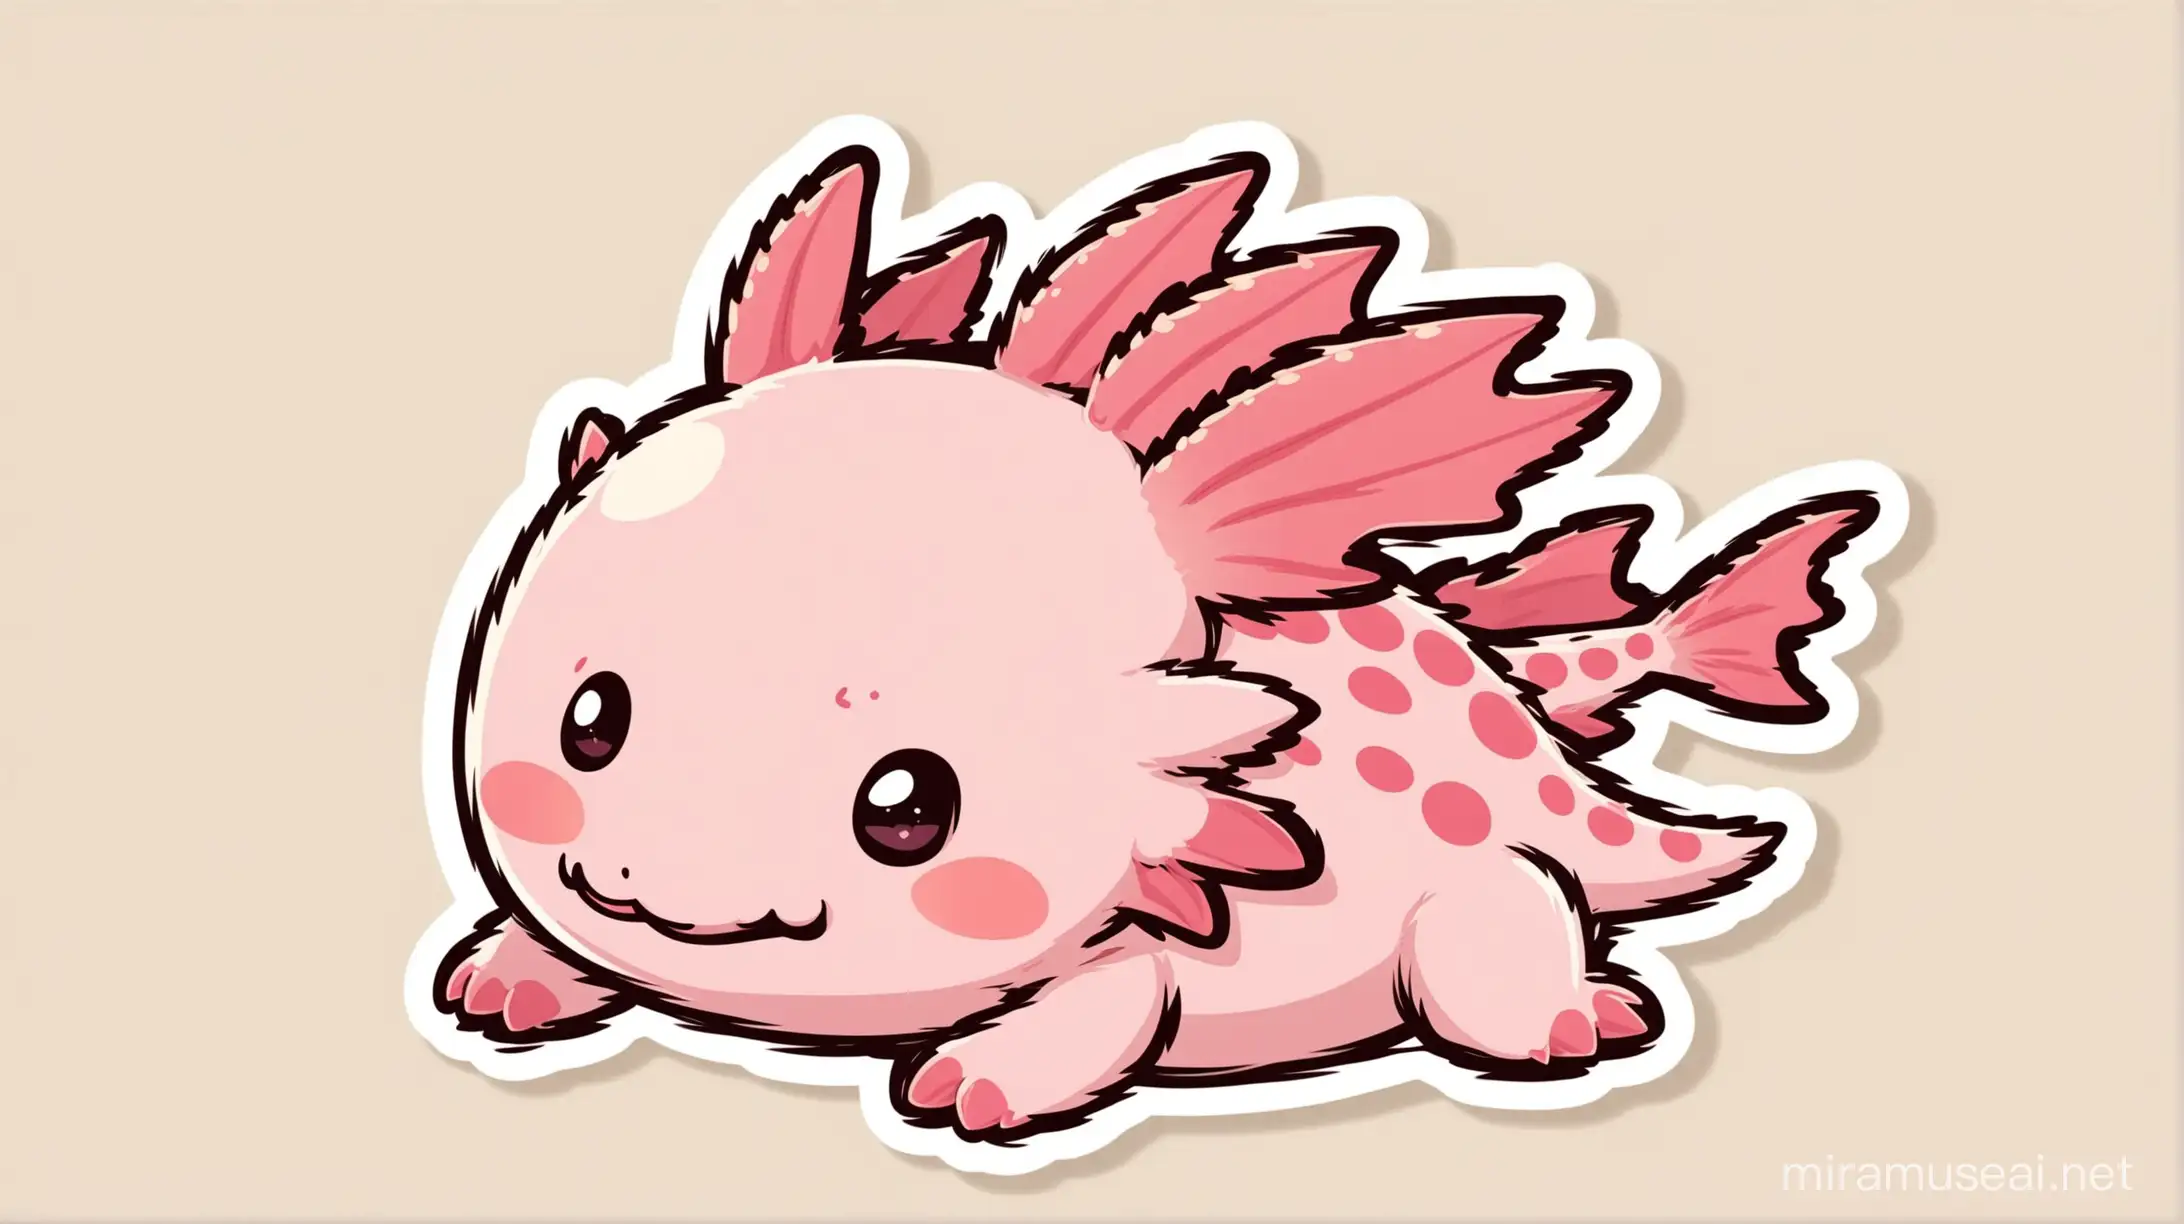 Adorable Axolotl in Sticker Style